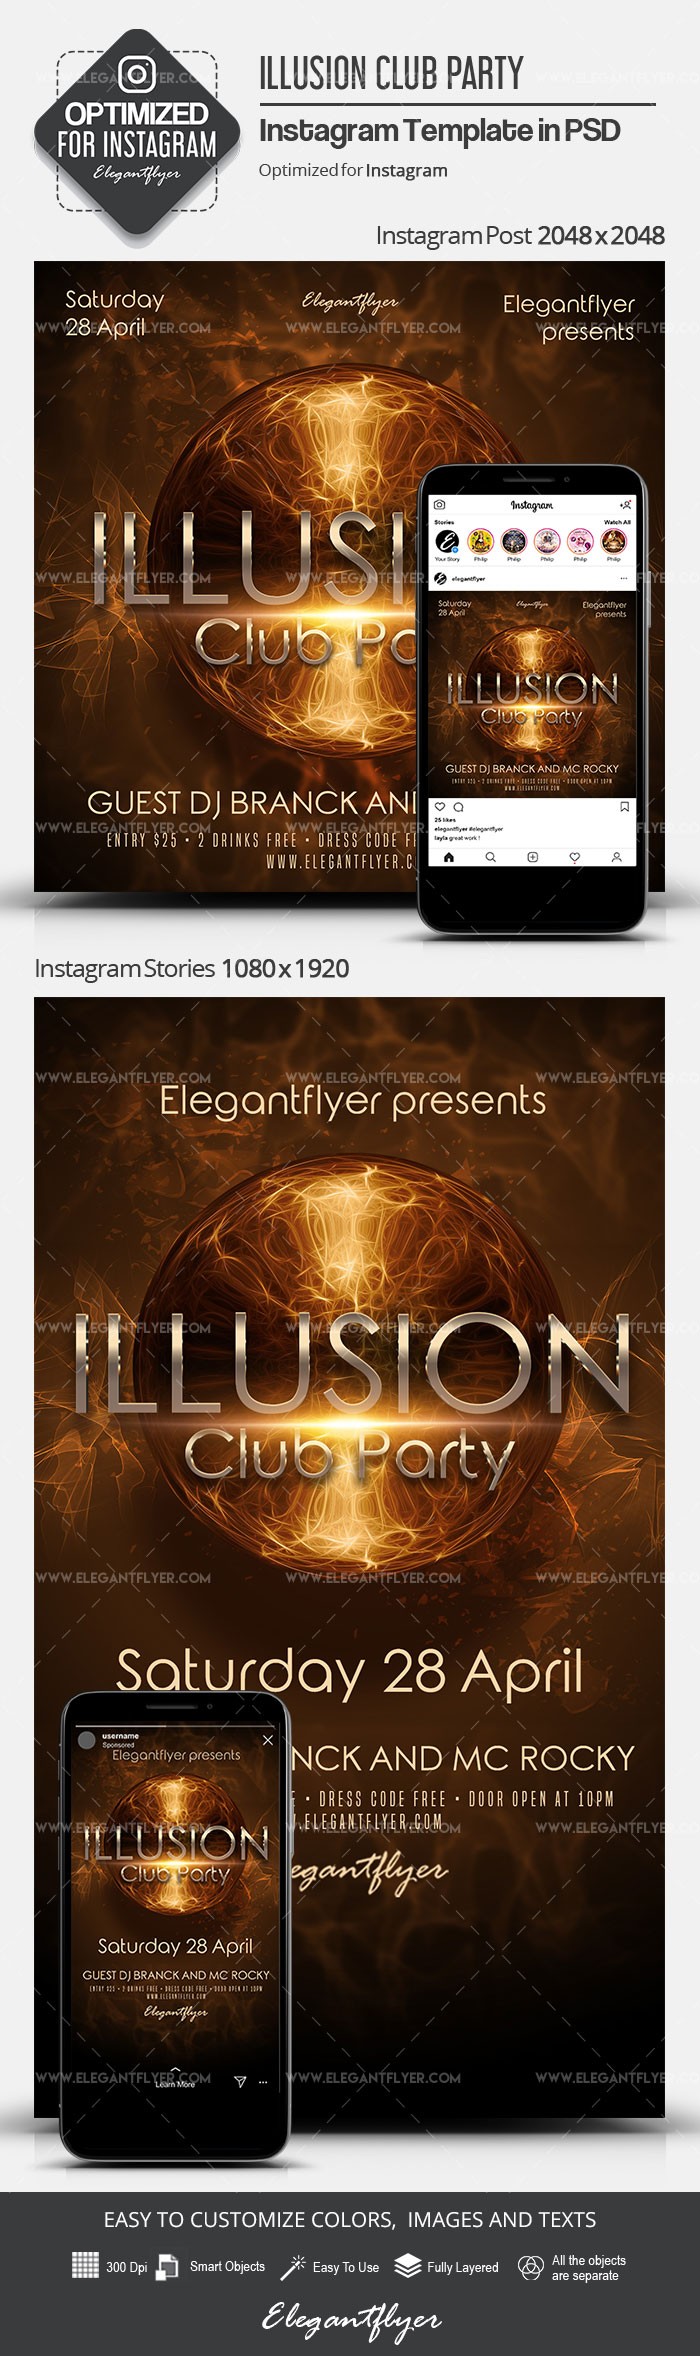 Impreza w klubie Illusion by ElegantFlyer